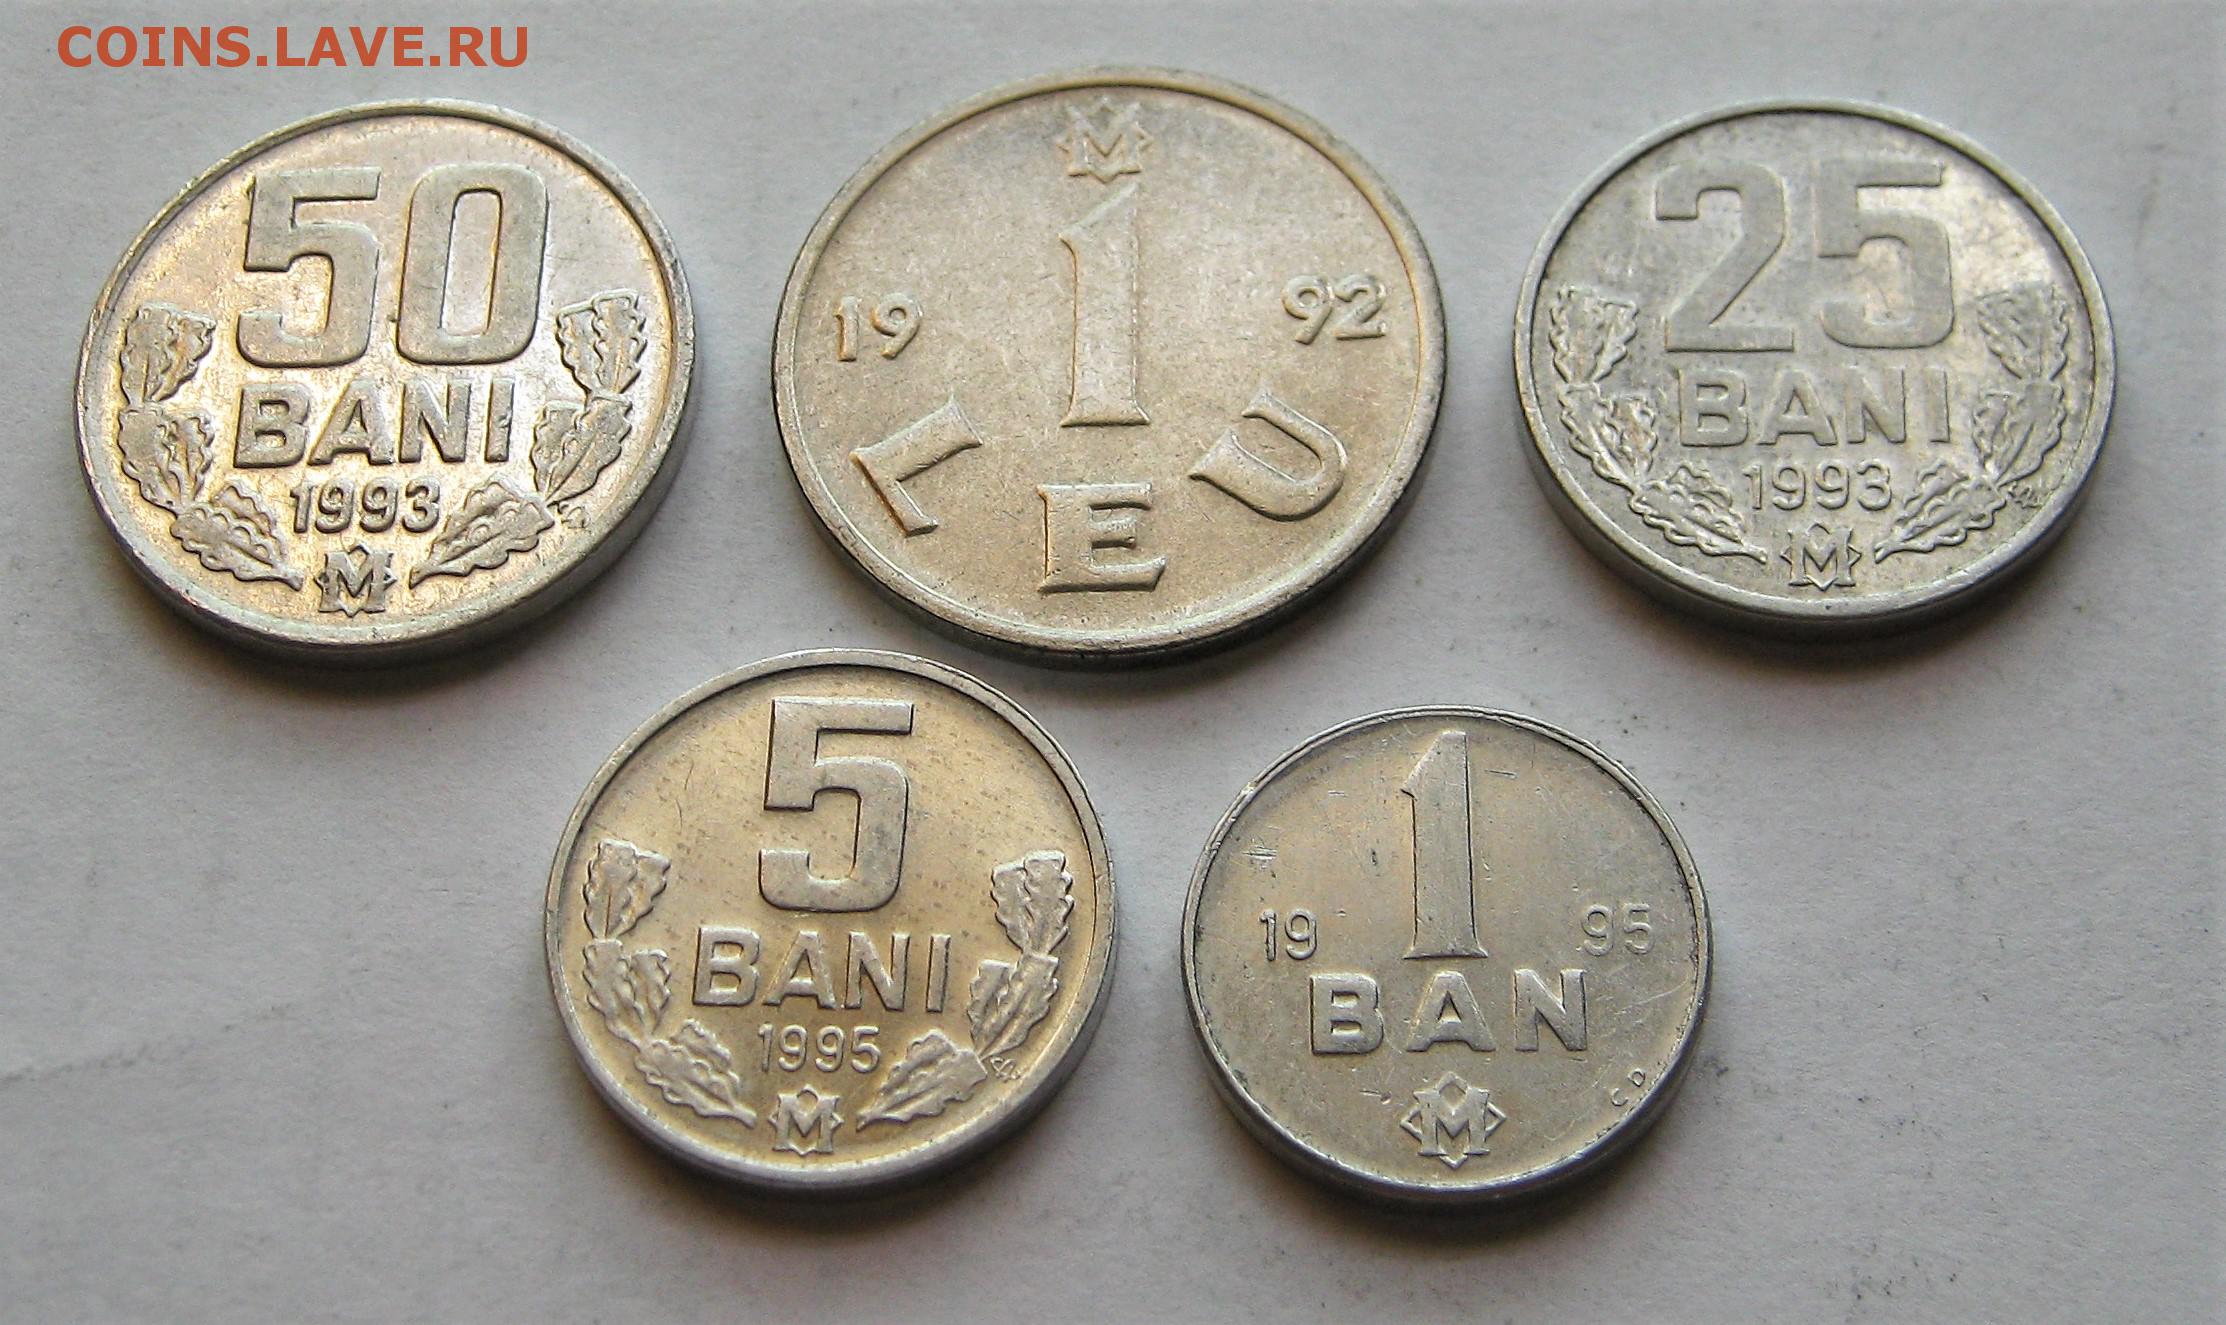 5 лей в рублях. Монеты Молдовы 1992-1993. Монета 5 bani 1993. Молдавия 5 леев, 1993. Капсульные листы монет 1992 -1993.